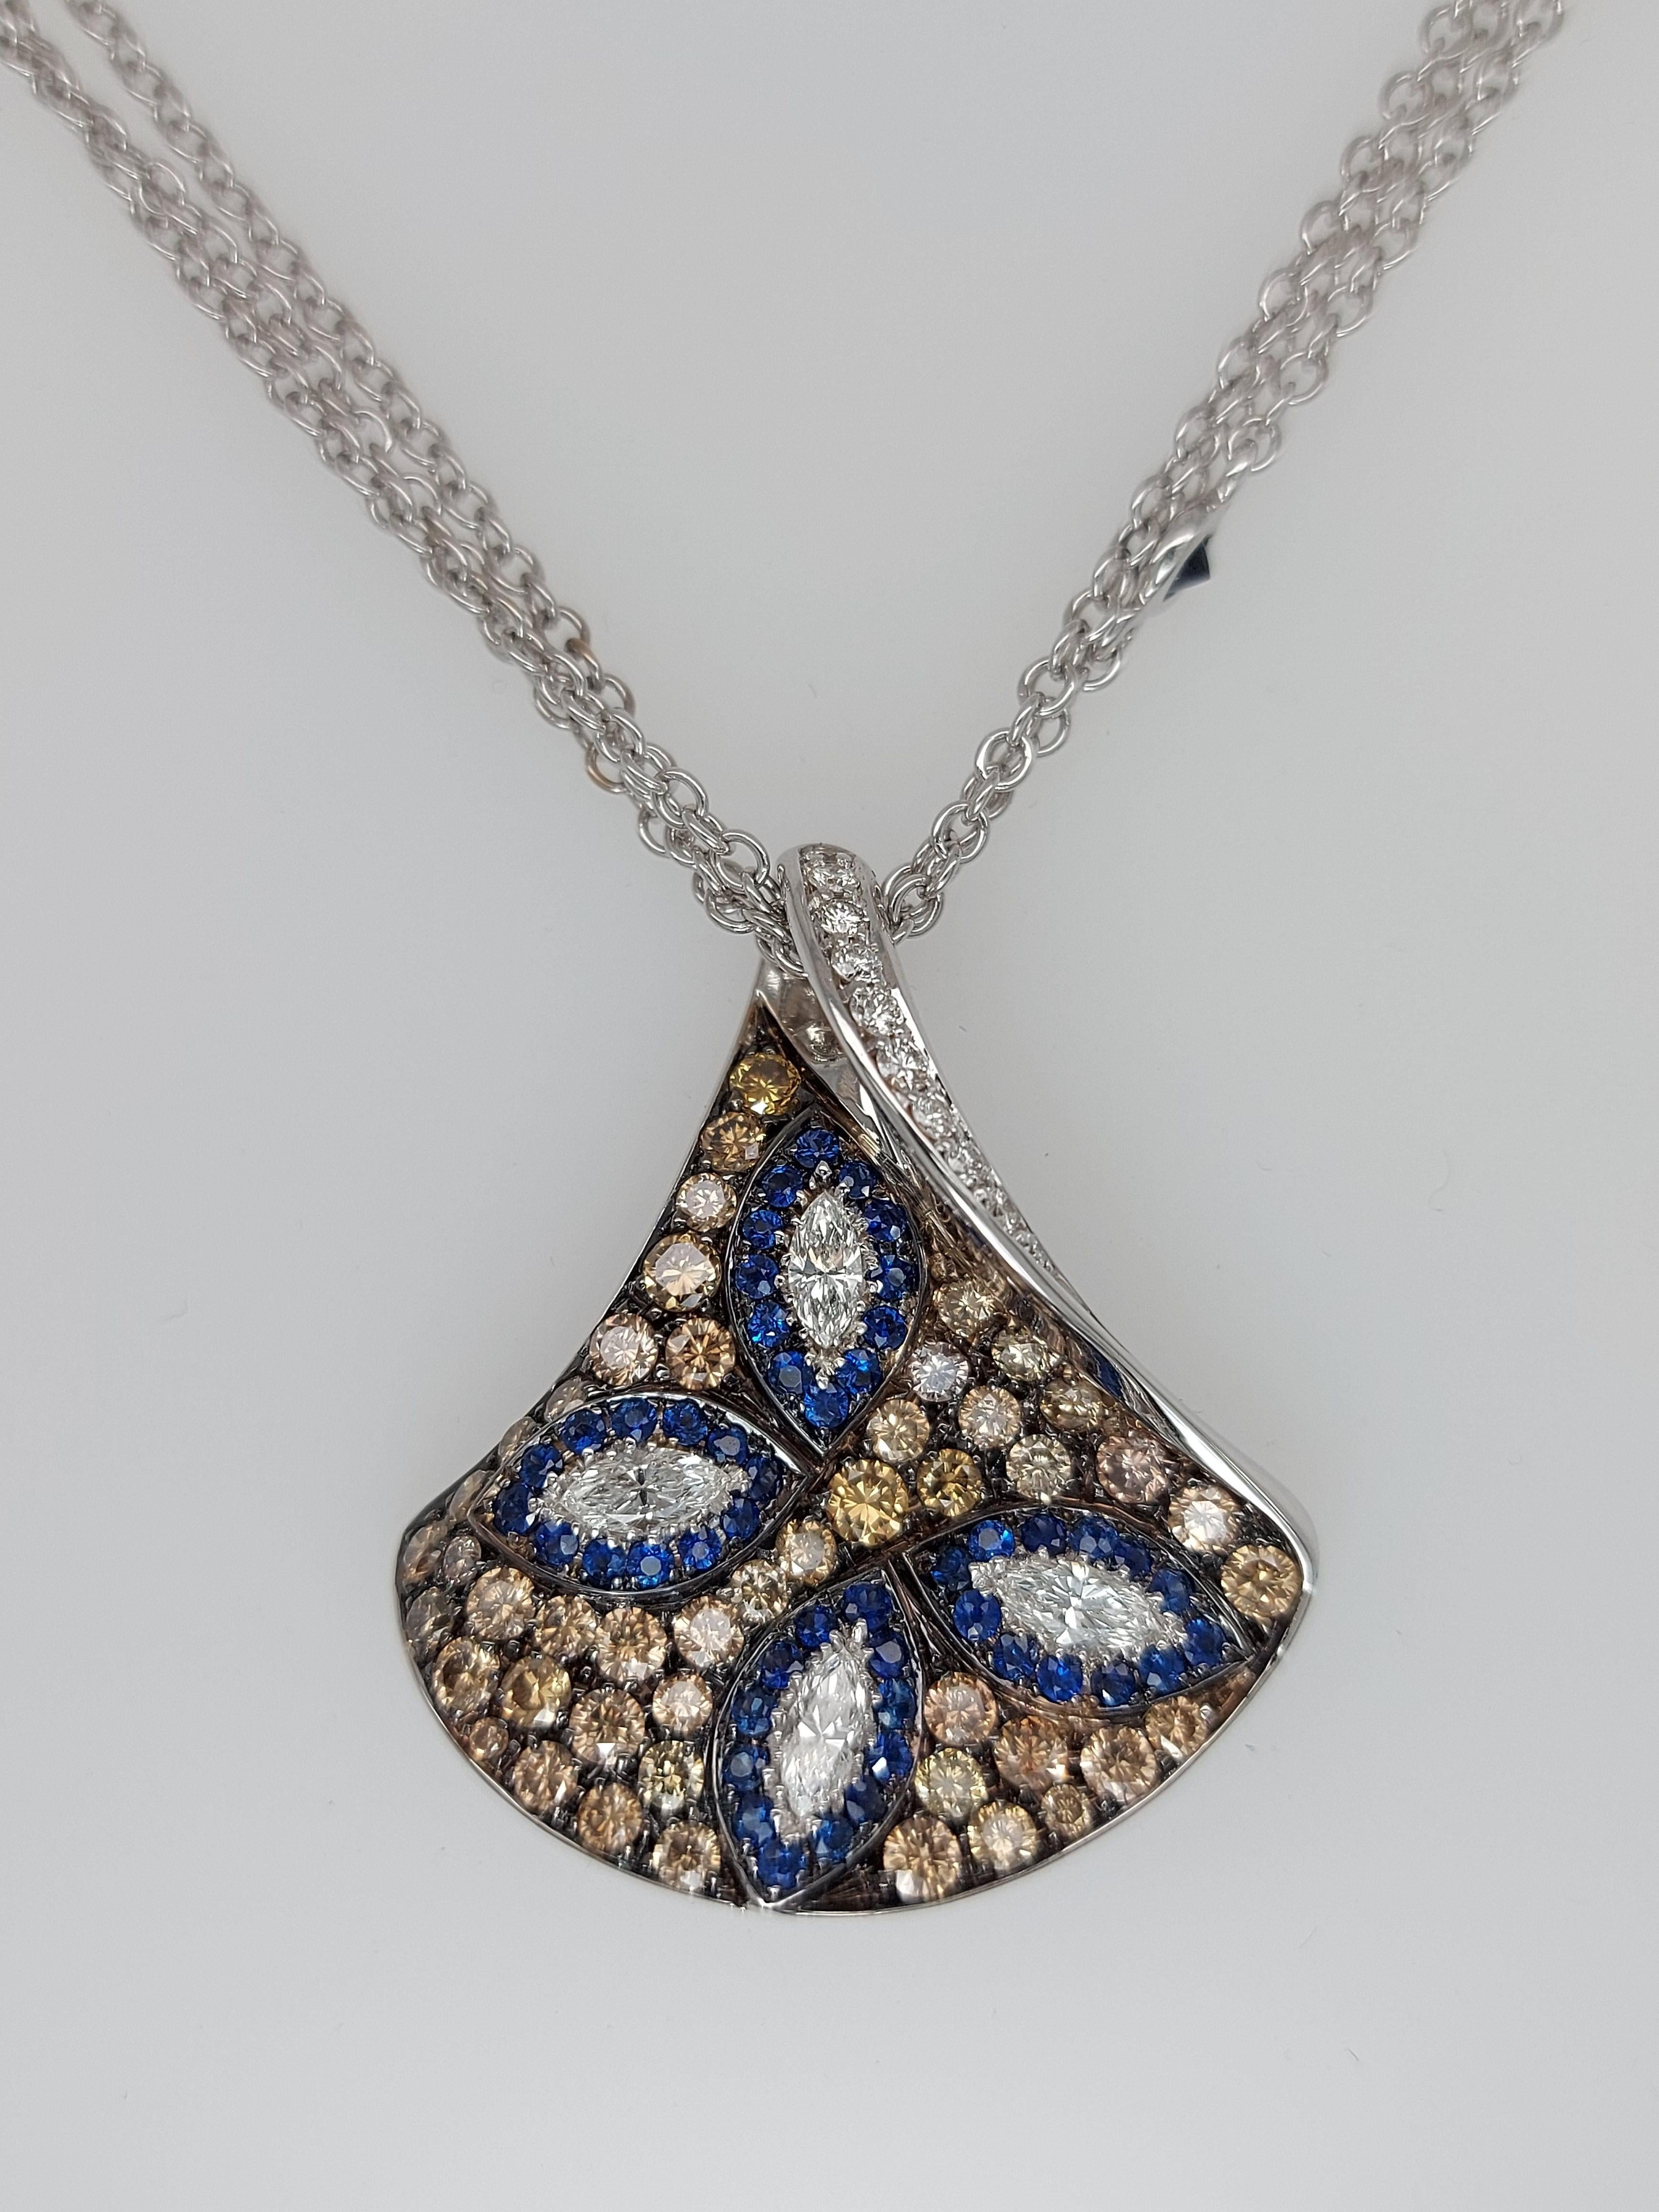 Brilliant Cut 18kt White Gold, White & Brown Diamonds & Sapphire, Triangle Pendant Necklace For Sale